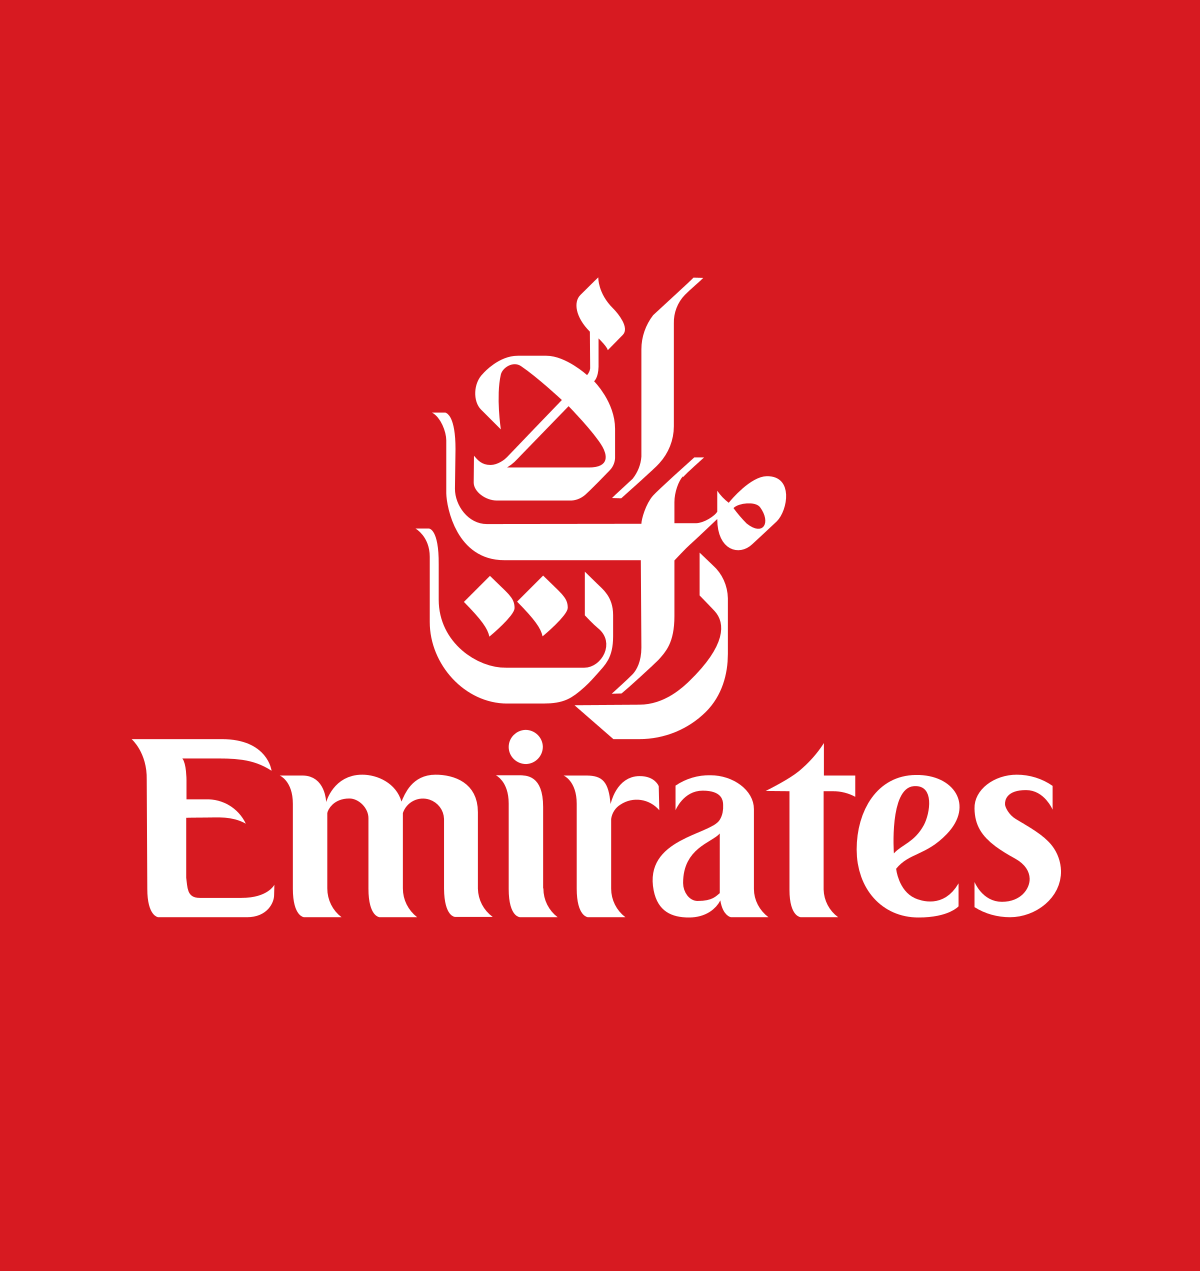 Emerates Logo - Emirates (airline)